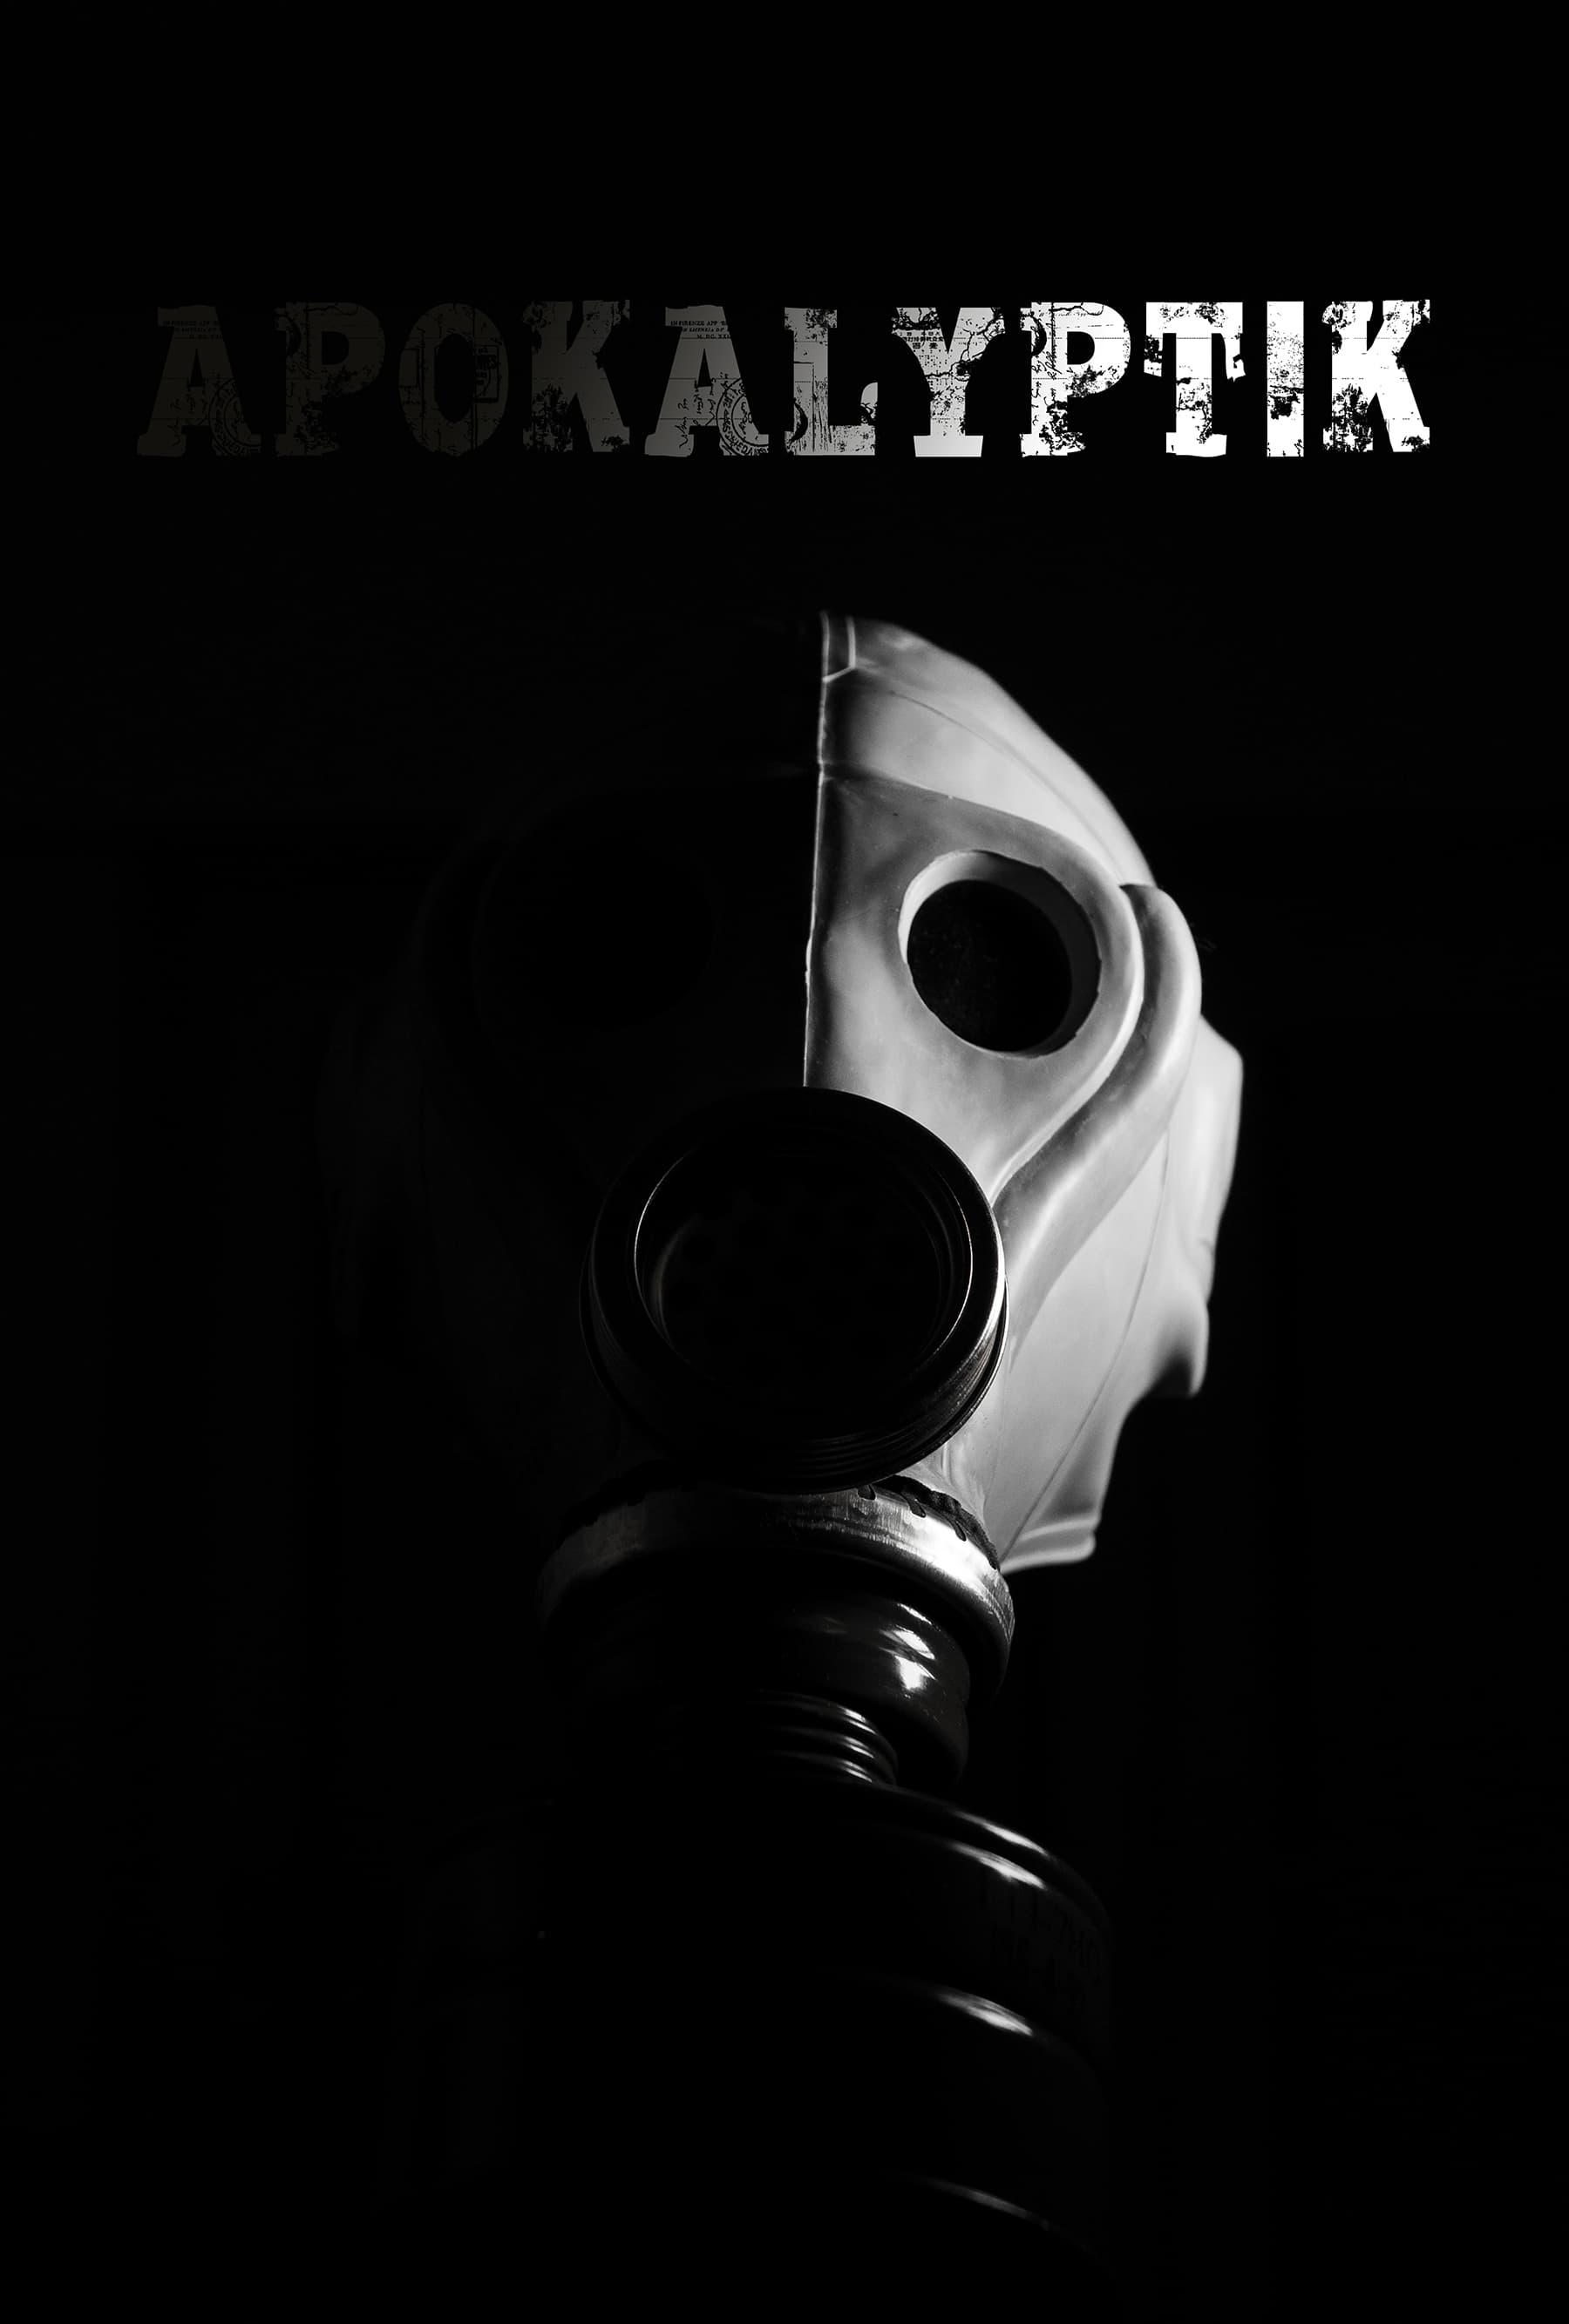 Apokalyptik poster